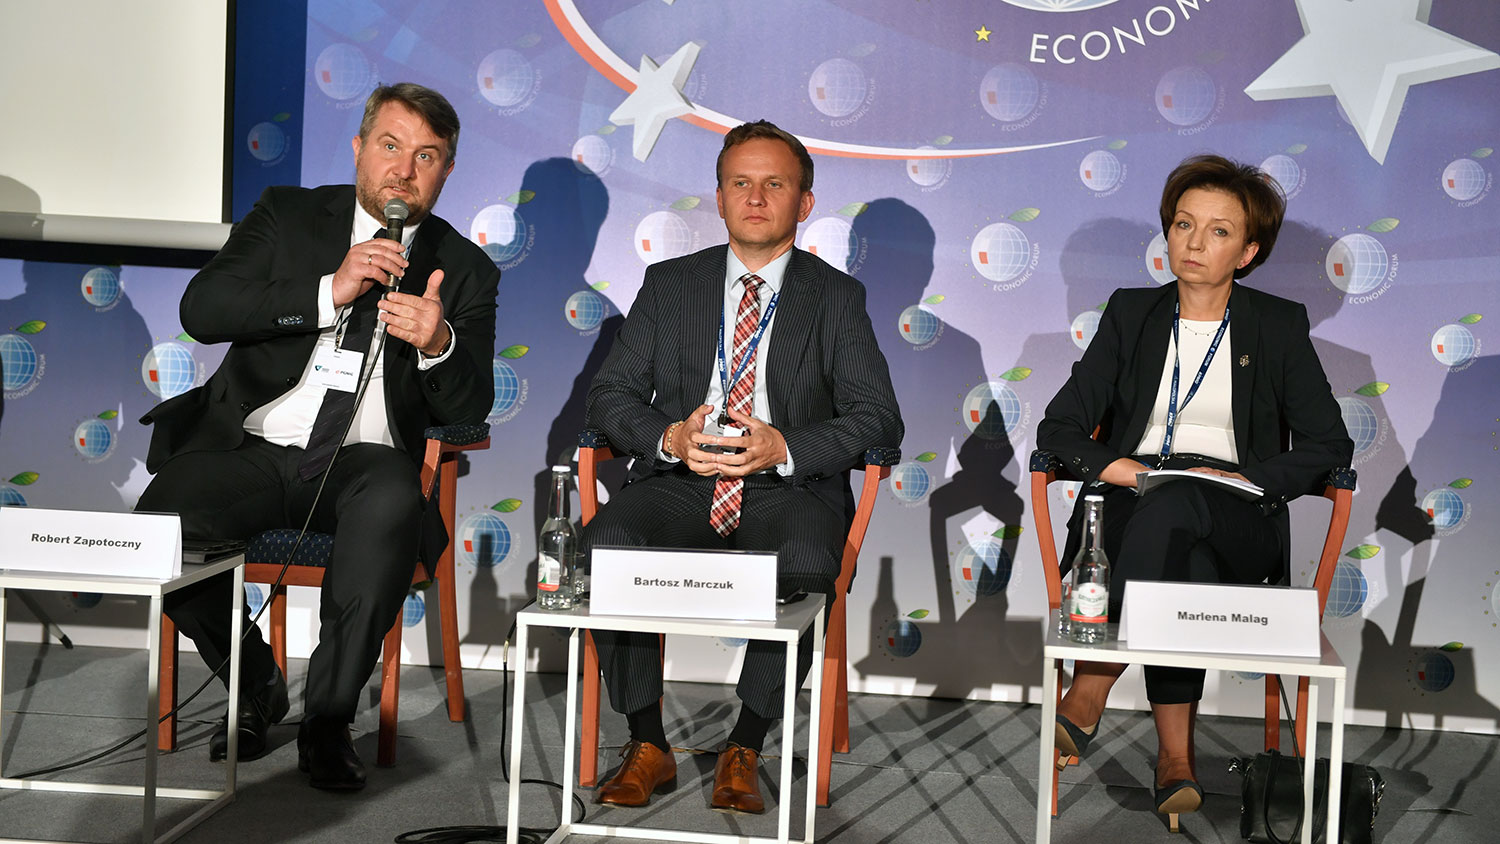 Forum Ekonomiczne 2020: PPK jako benefit – szanse i wyzwania